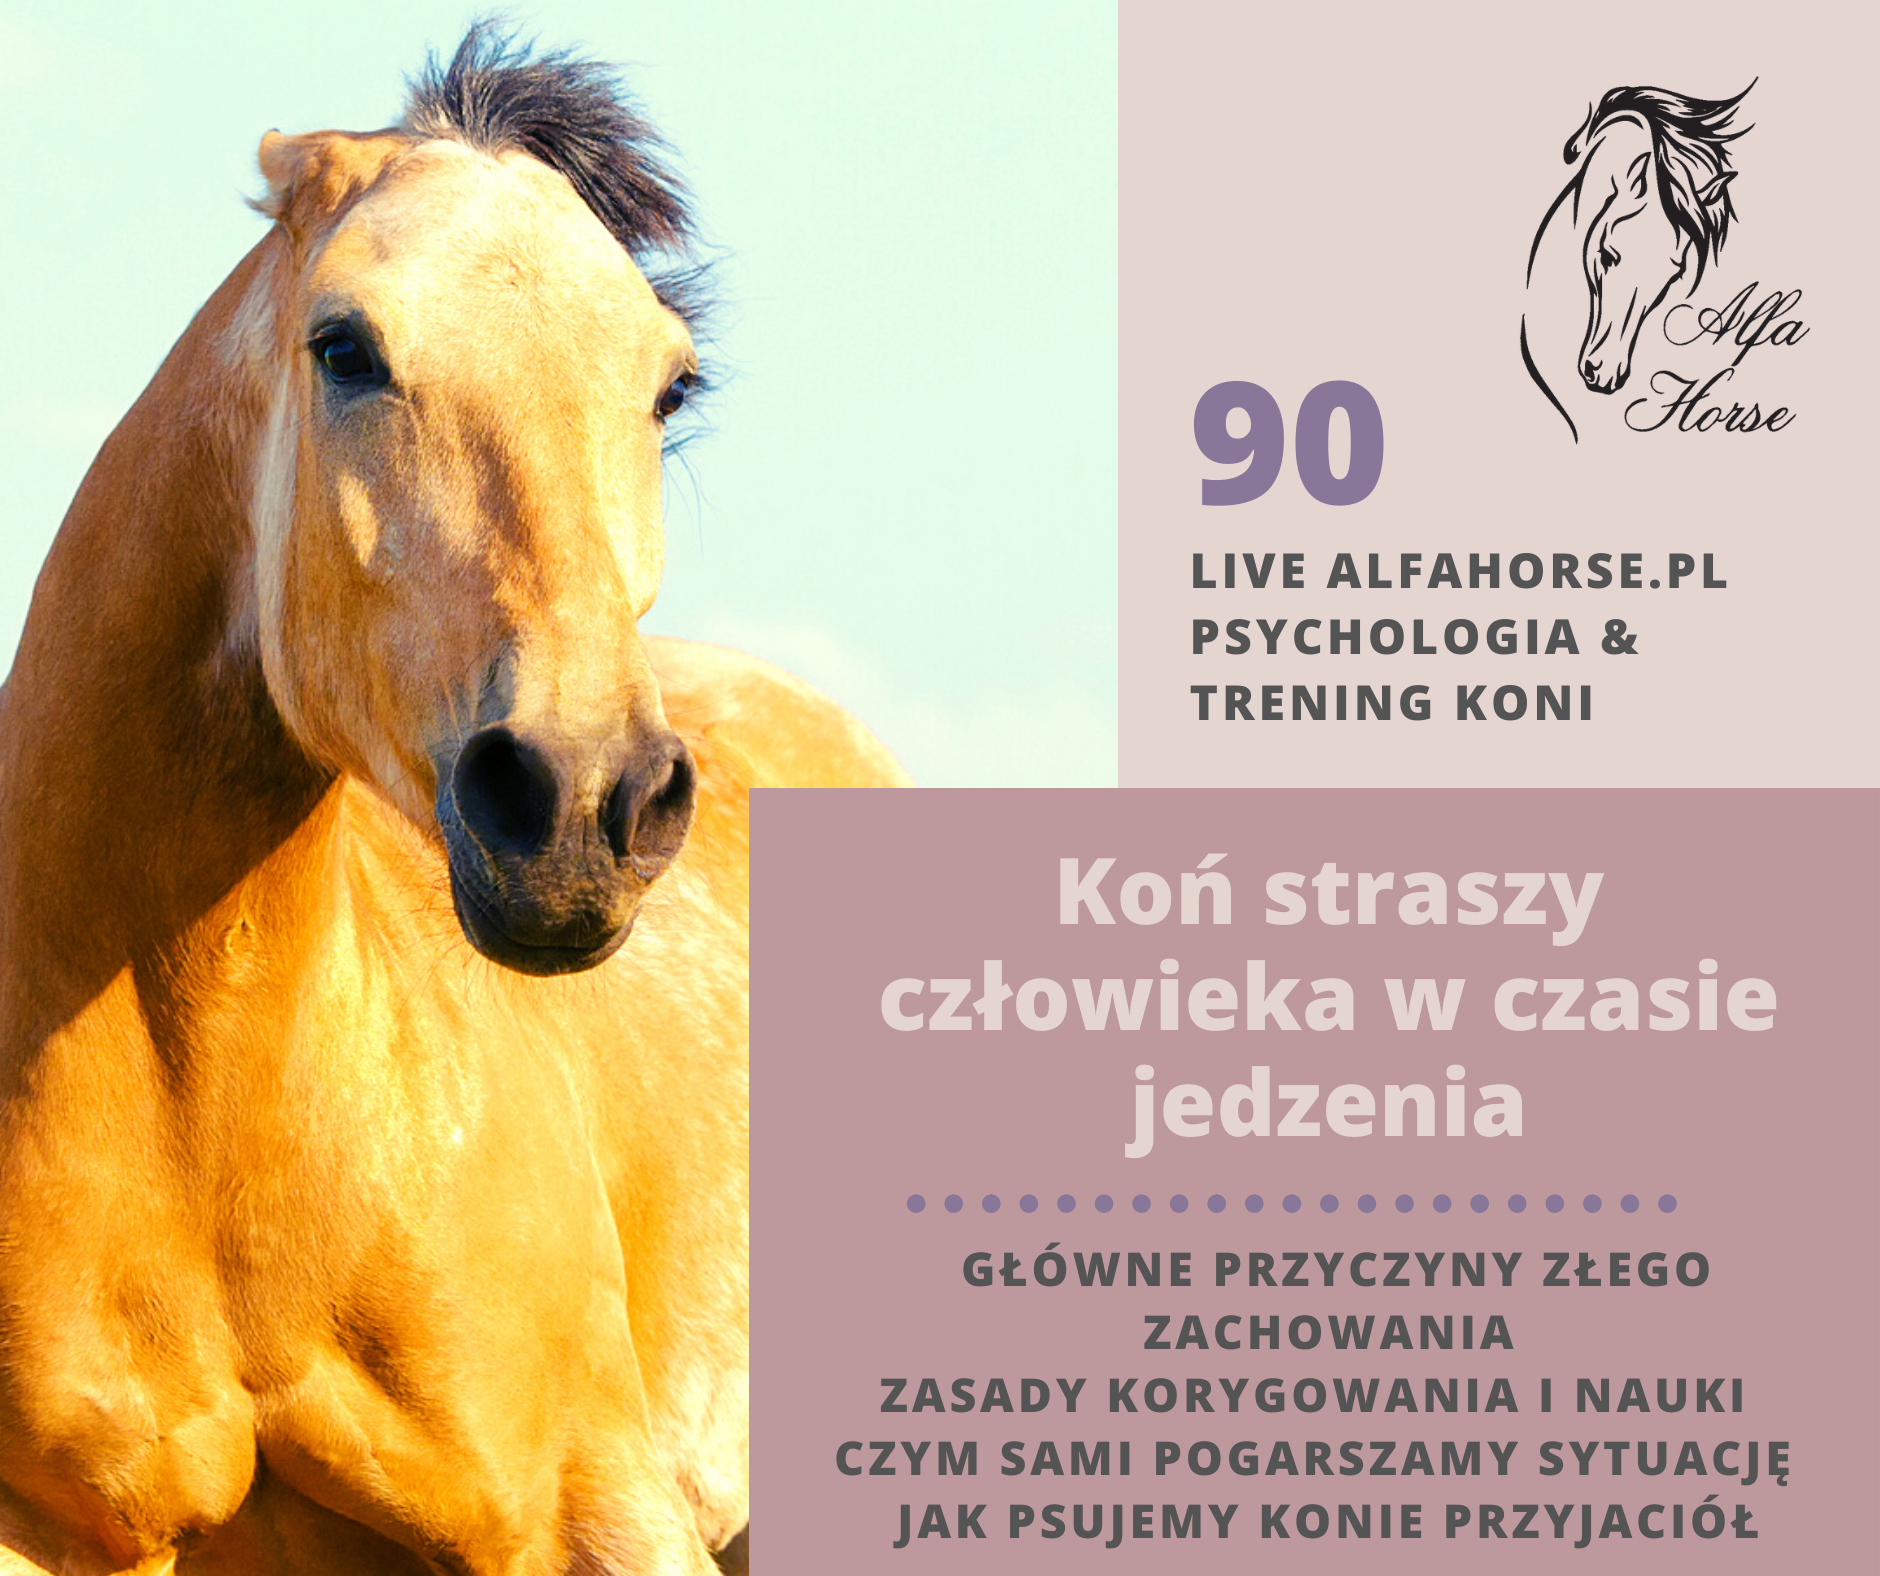 live_90_kon_straszy_czlowieka_przy_jedzeniu_trening_koni